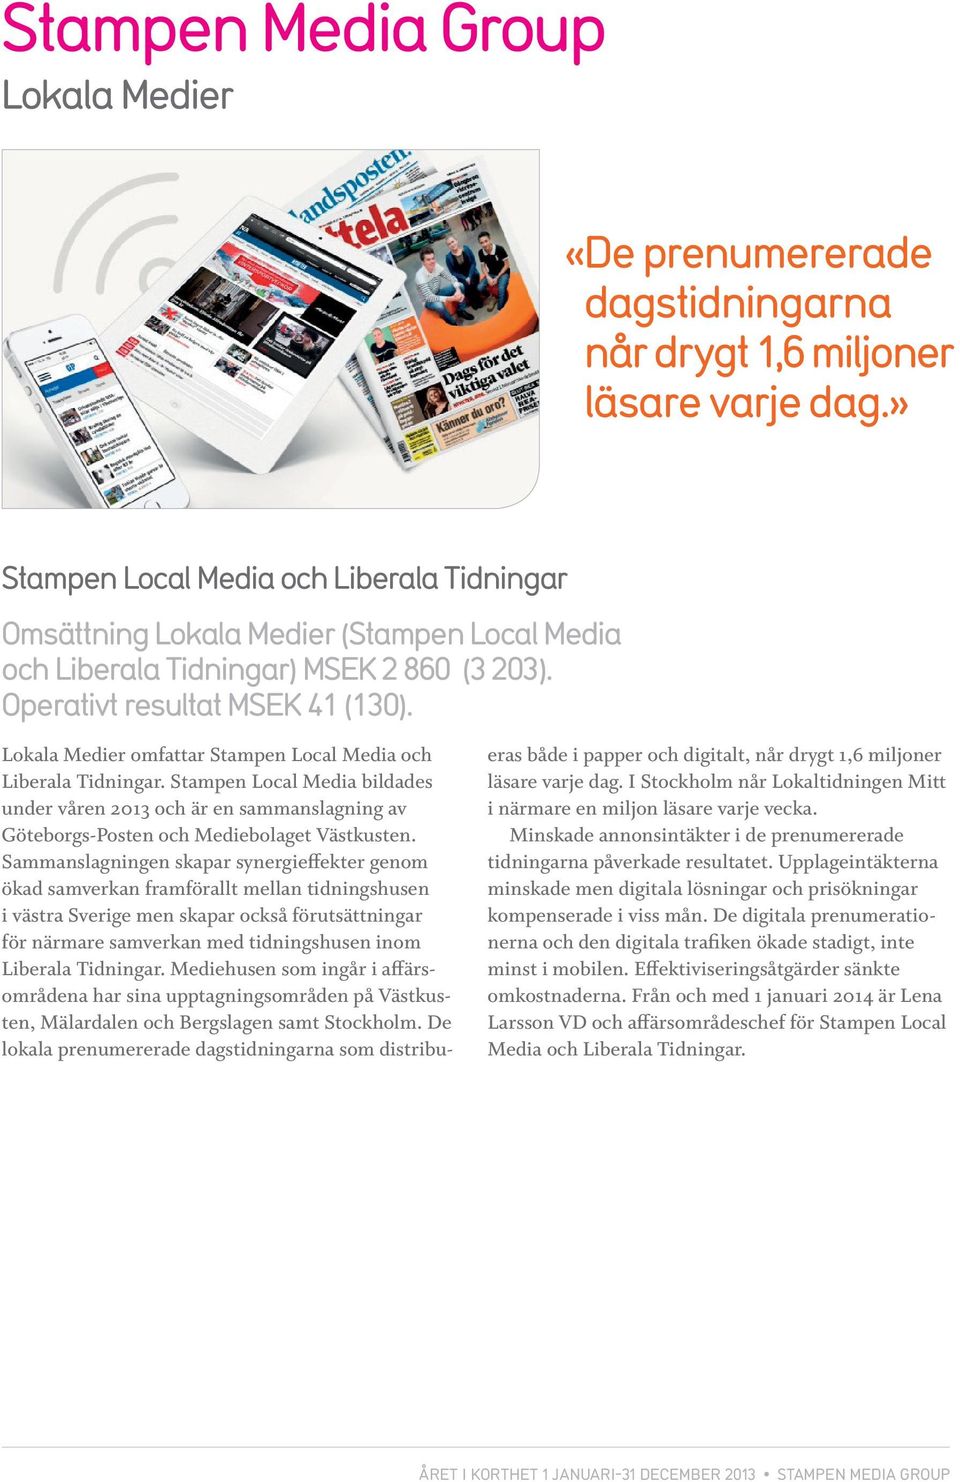 Lokala Medier omfattar Stampen Local Media och Liberala Tidningar. Stampen Local Media bildades under våren 2013 och är en sammanslagning av Göteborgs-Posten och Mediebolaget Västkusten.